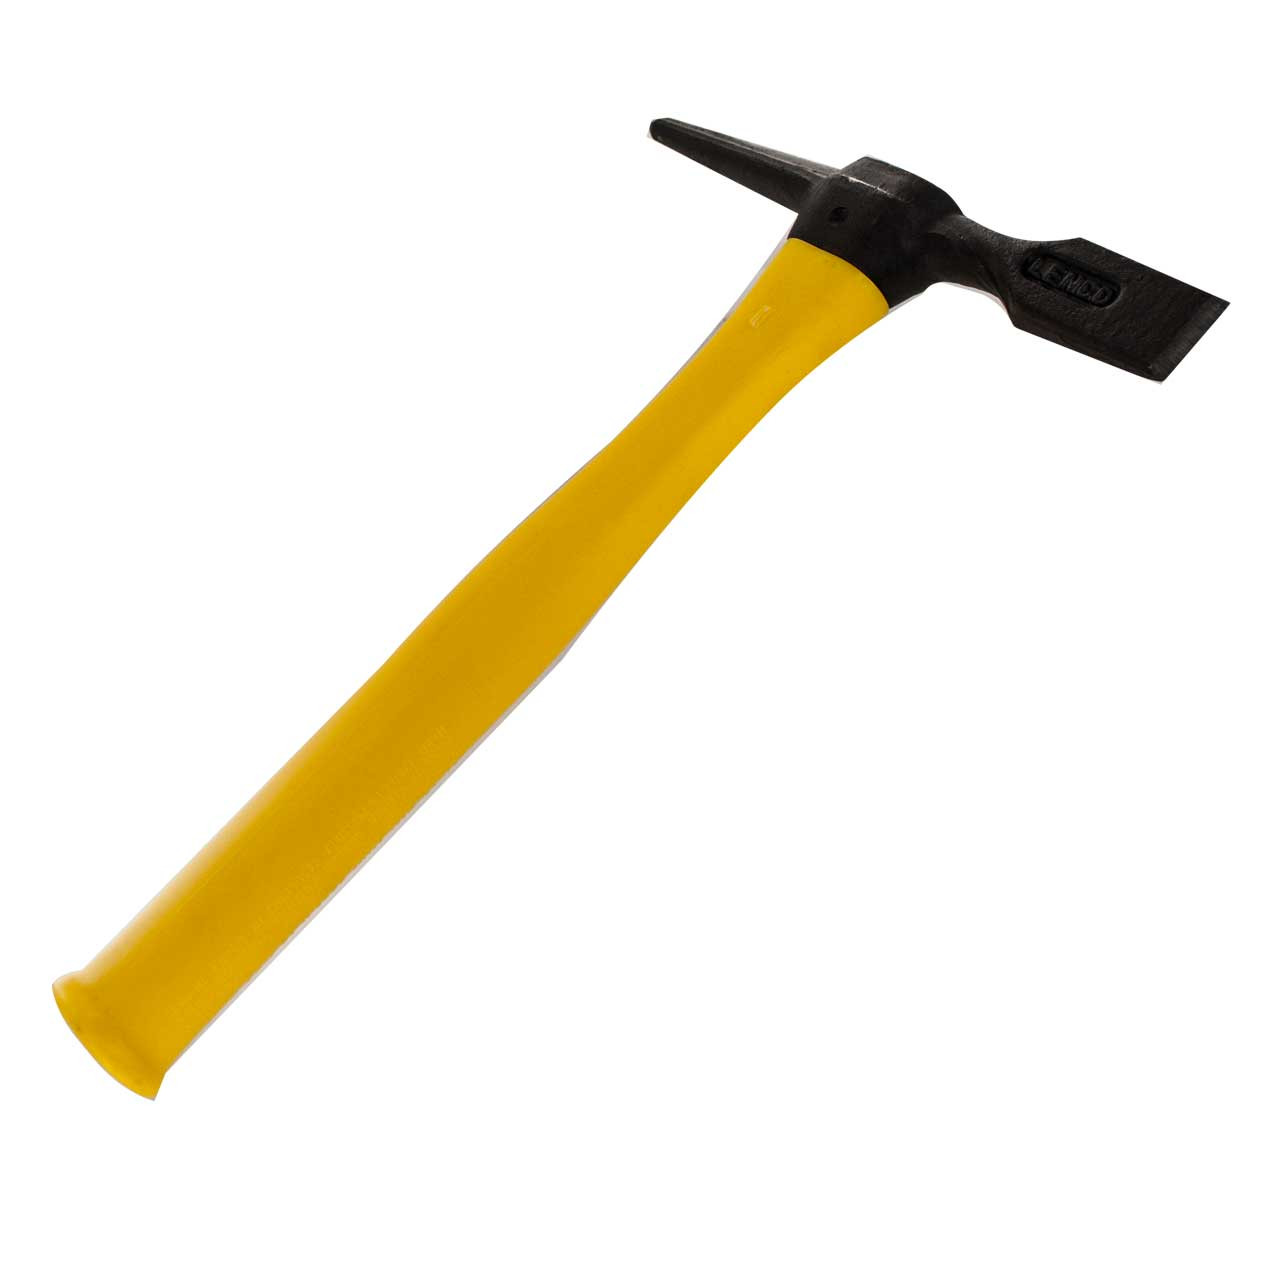 Lenco 09200 Lphh Chipping Hammer